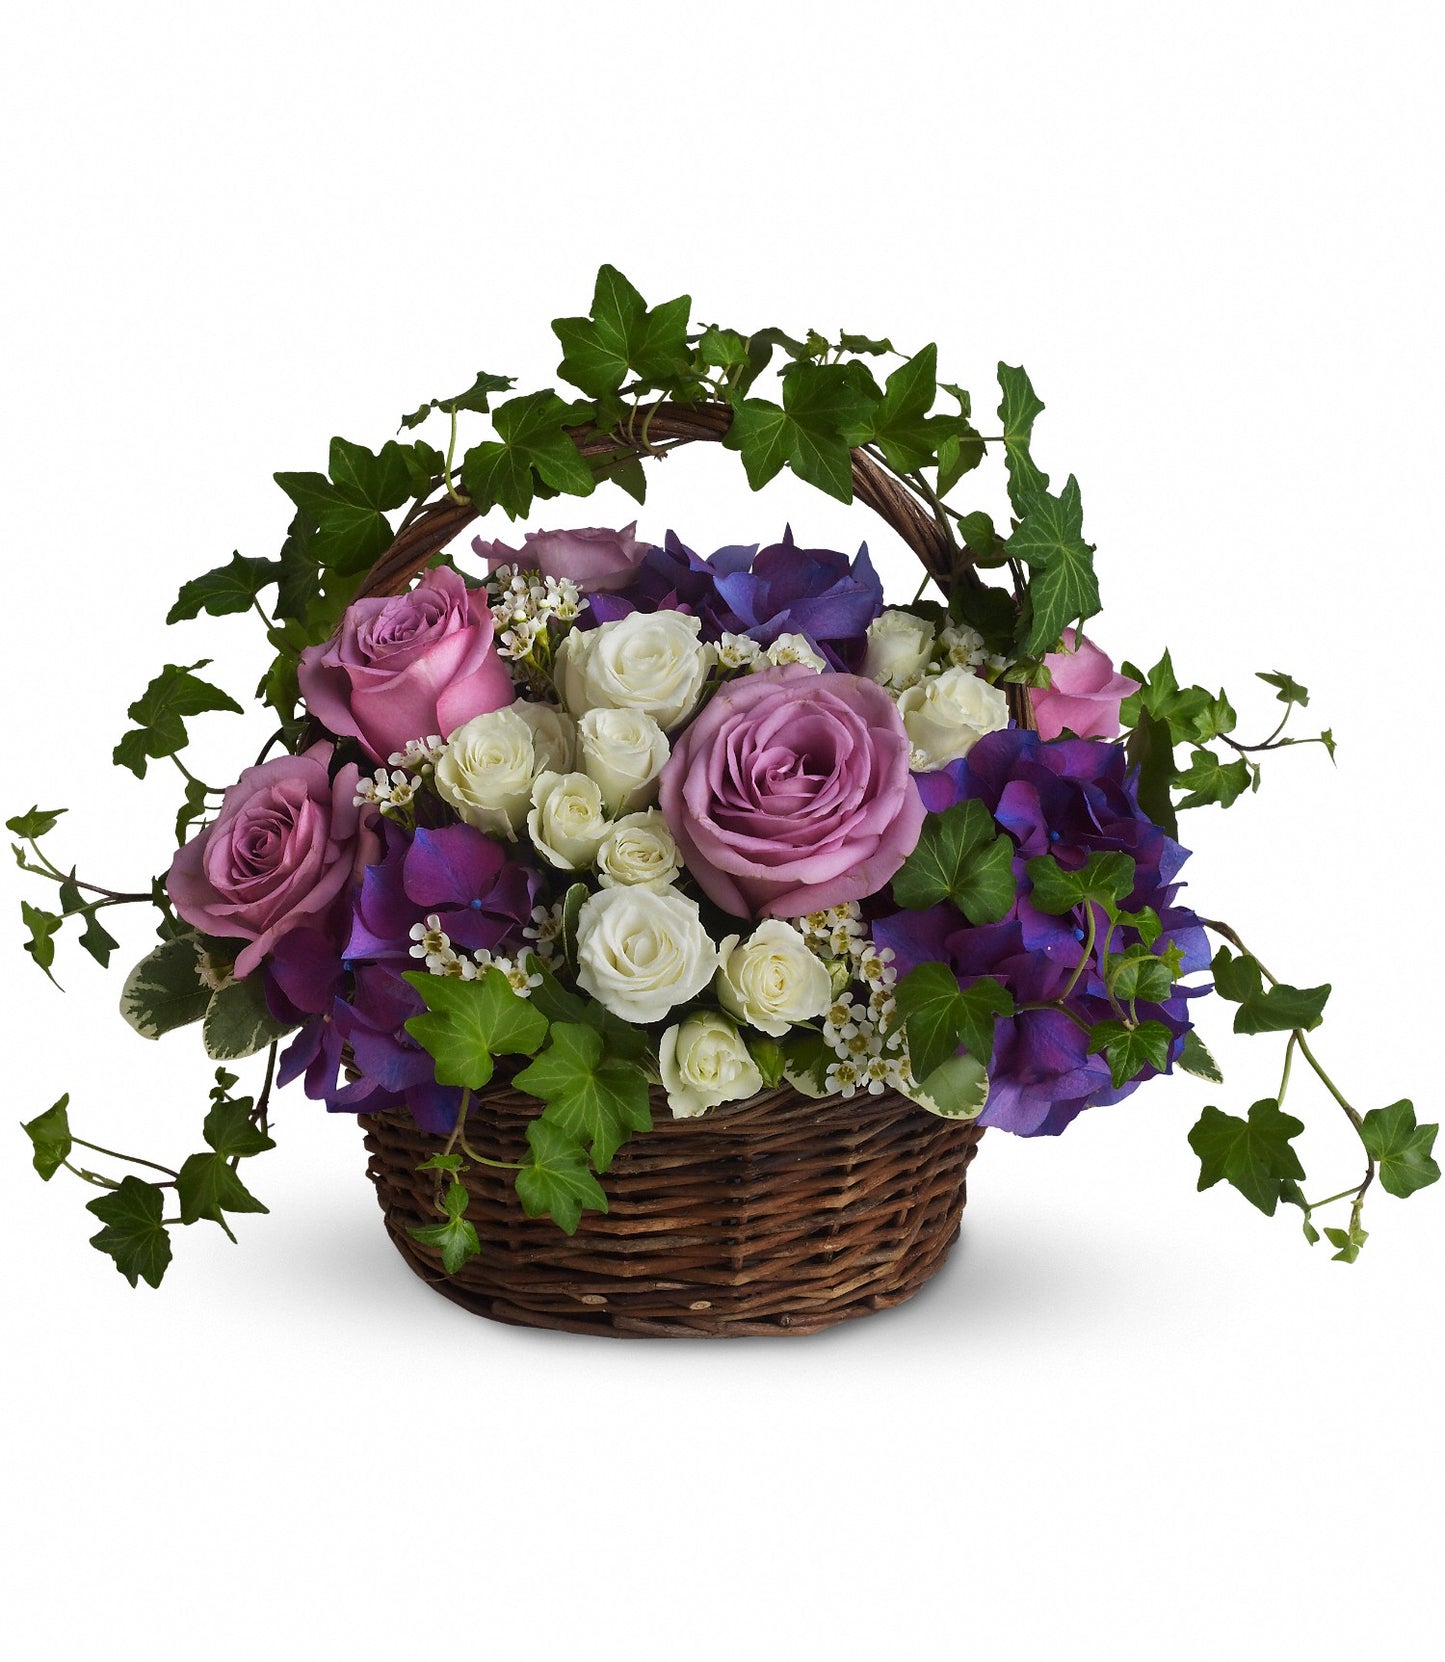 A Full Life Flower Basket